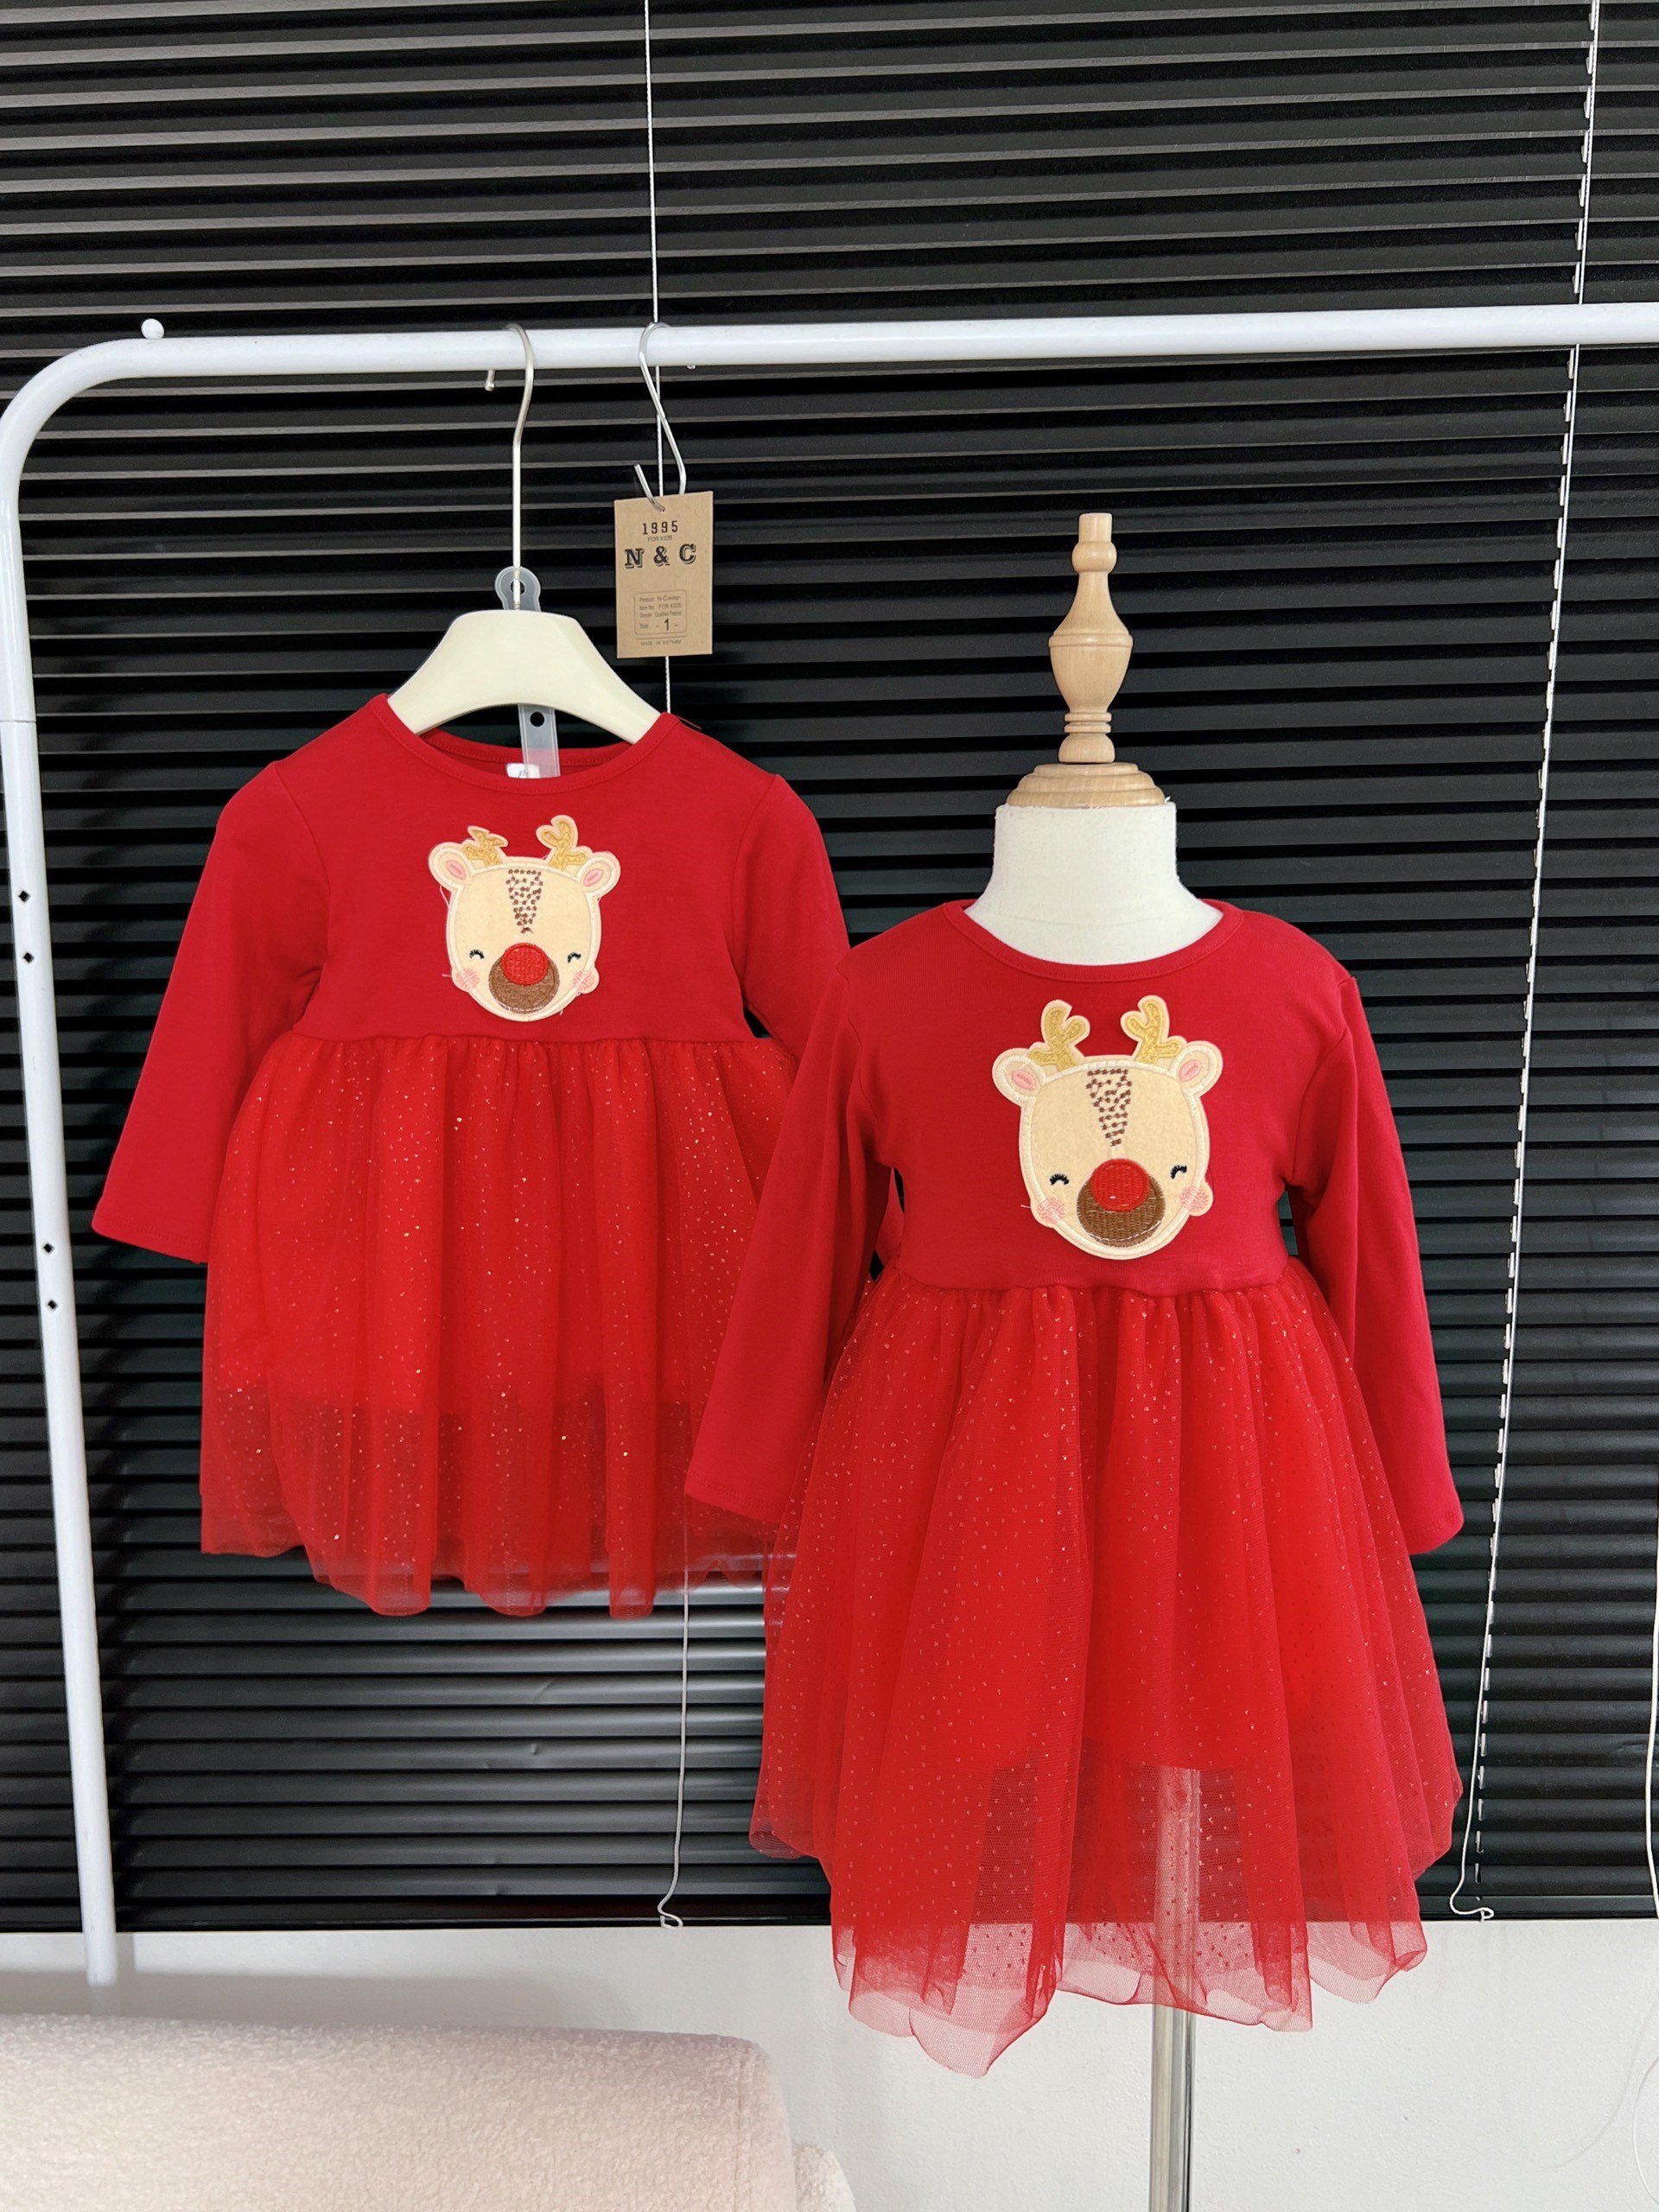 Đầm đẹp cho bé gái màu đỏ Noel Giá Rẻ Tận Kho Sỉ – DoChoBeYeu.com